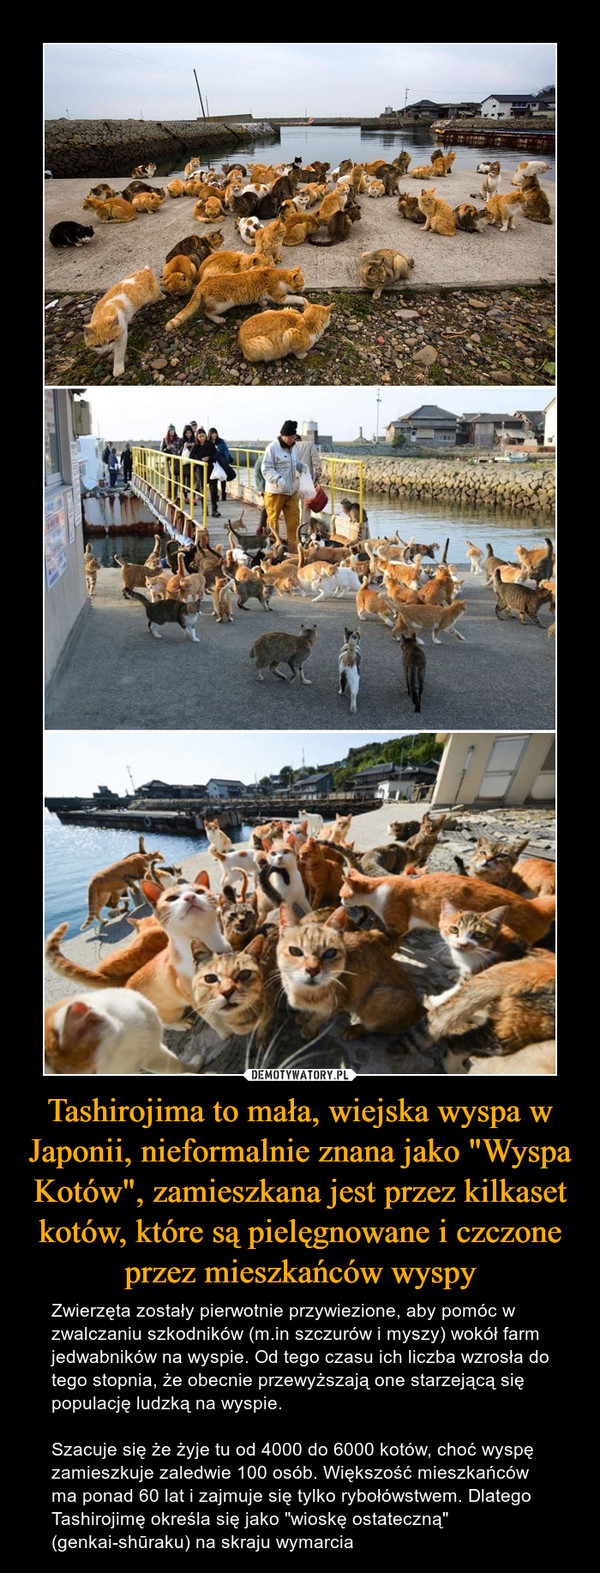 Tashirojima to mała, wiejska wyspa w Japonii, nieformalnie znana jako "Wyspa Kotów", zamieszkana jest przez kilkaset kotów, które są pielęgnowane i czczone przez mieszkańców wyspy